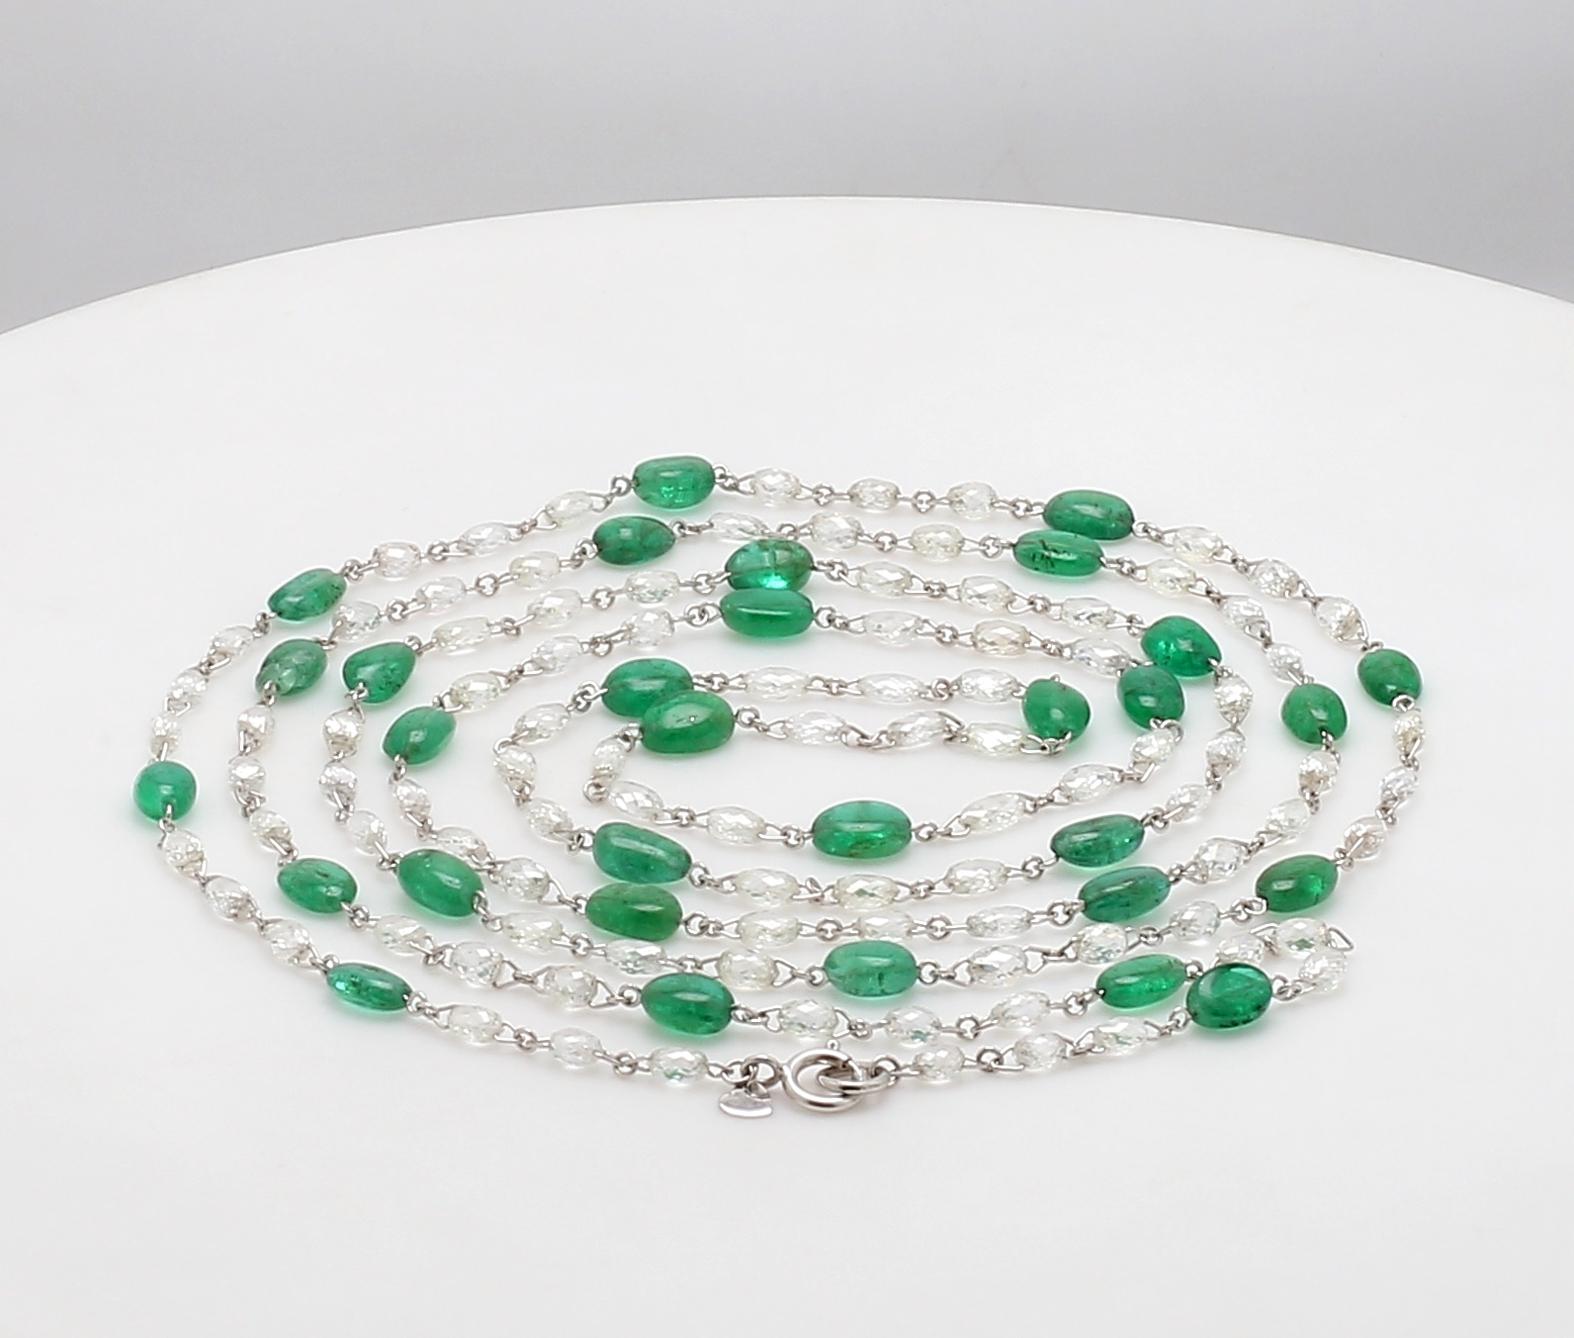 Briolette Cut PANIM Diamond Briolette & Emerald Necklace in 18K White Gold For Sale